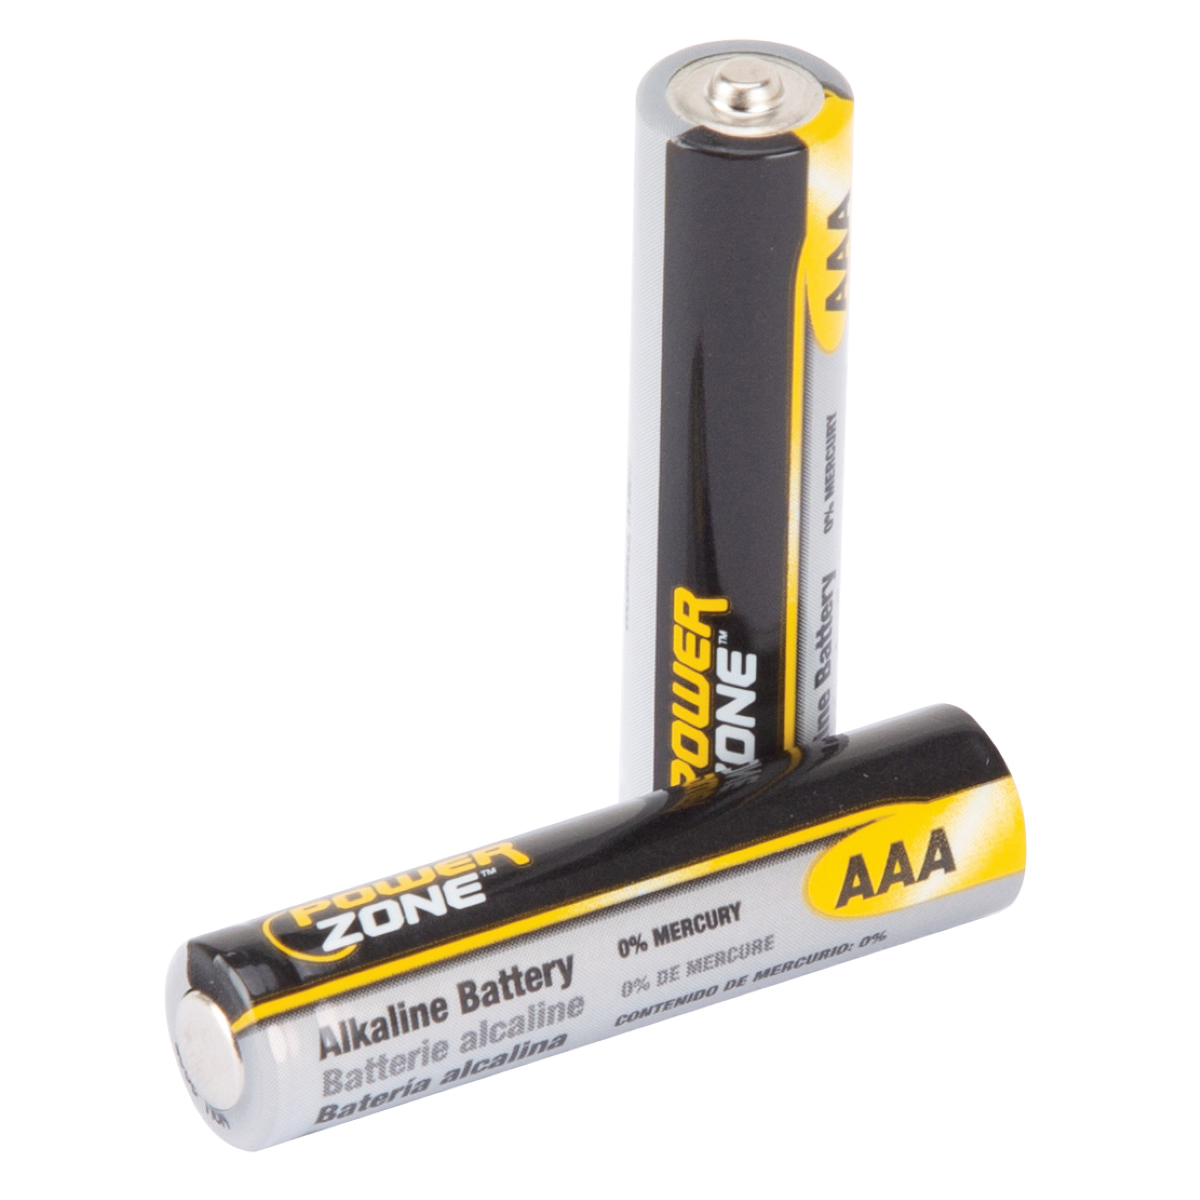 PowerZone LR03-24P, 1.5 V Battery, AAA Battery, 24 pk